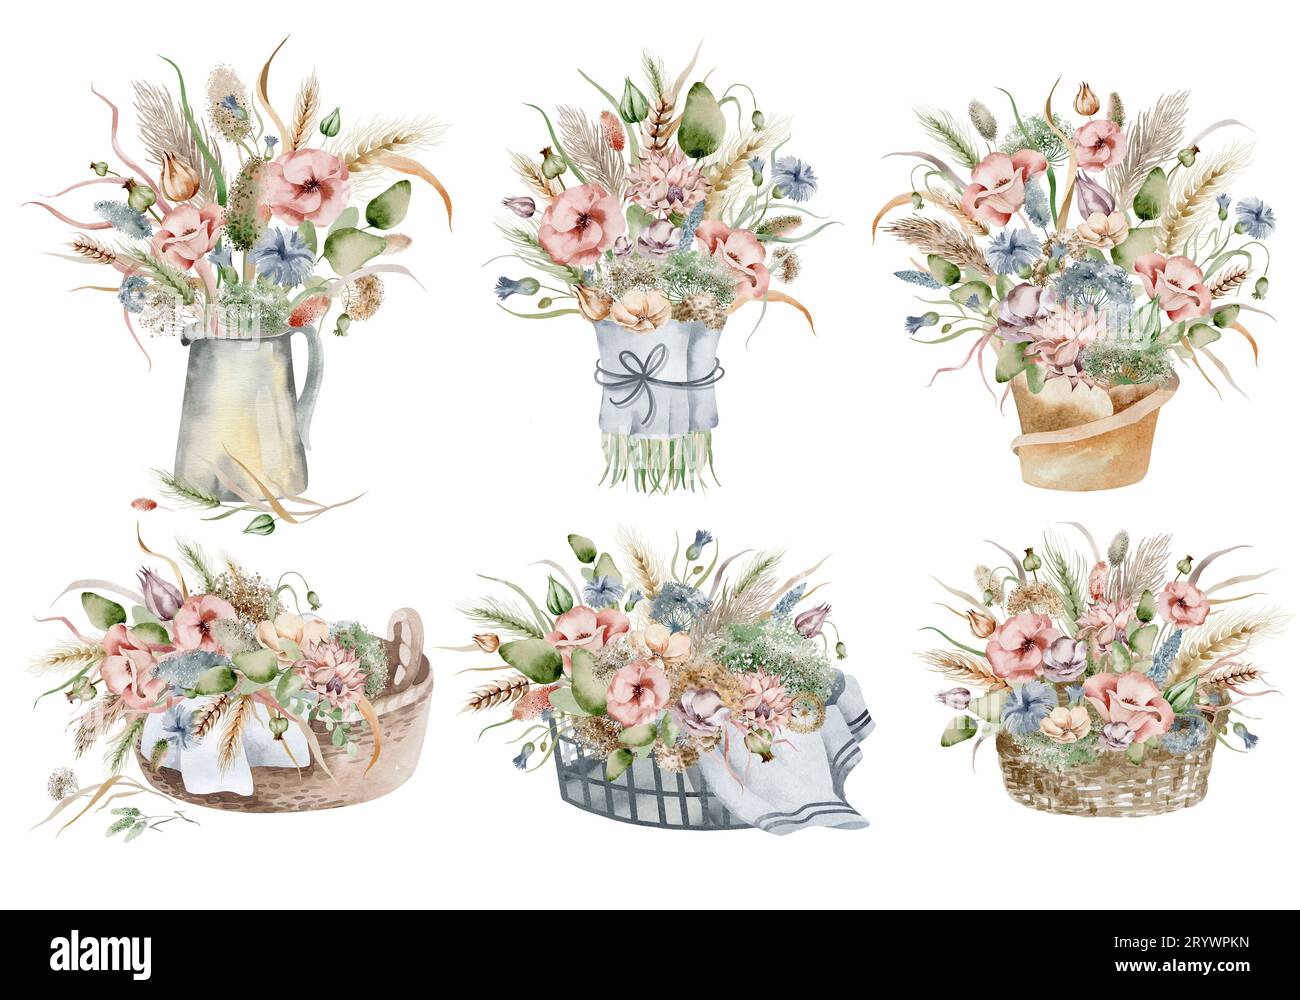 Un ensemble d'illustrations à l'aquarelle d'un bouquet de fleurs d'automne, dans des couleurs sombres chaudes sur un fond blanc, dessinées à la main Banque D'Images